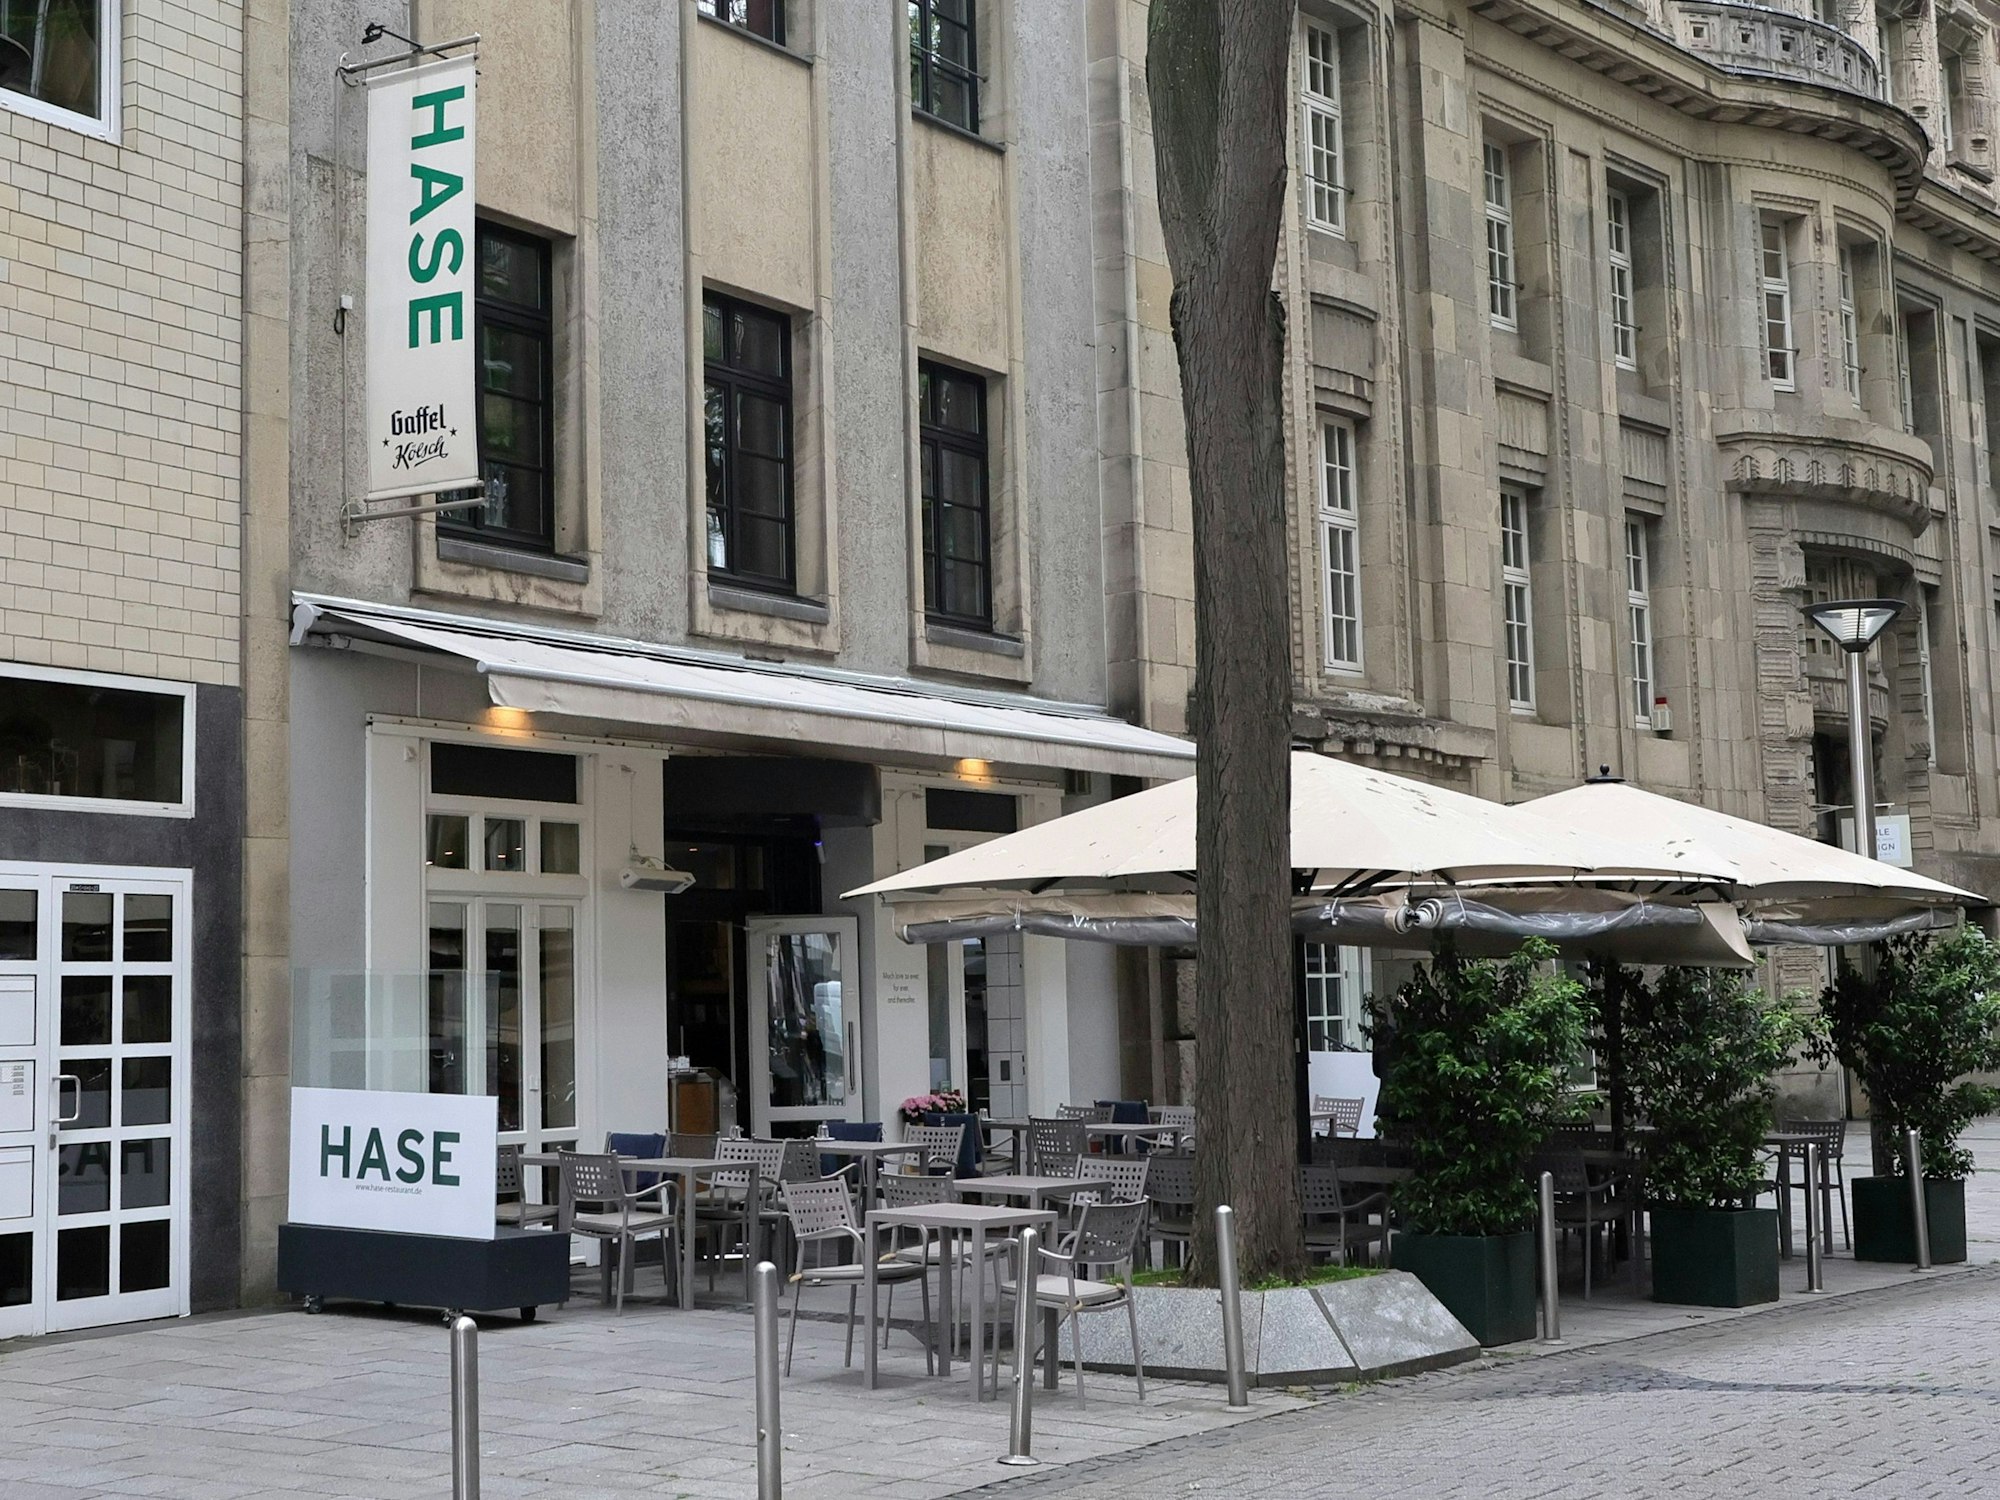 Restaurant Hase in der Kölner Innenstadt

